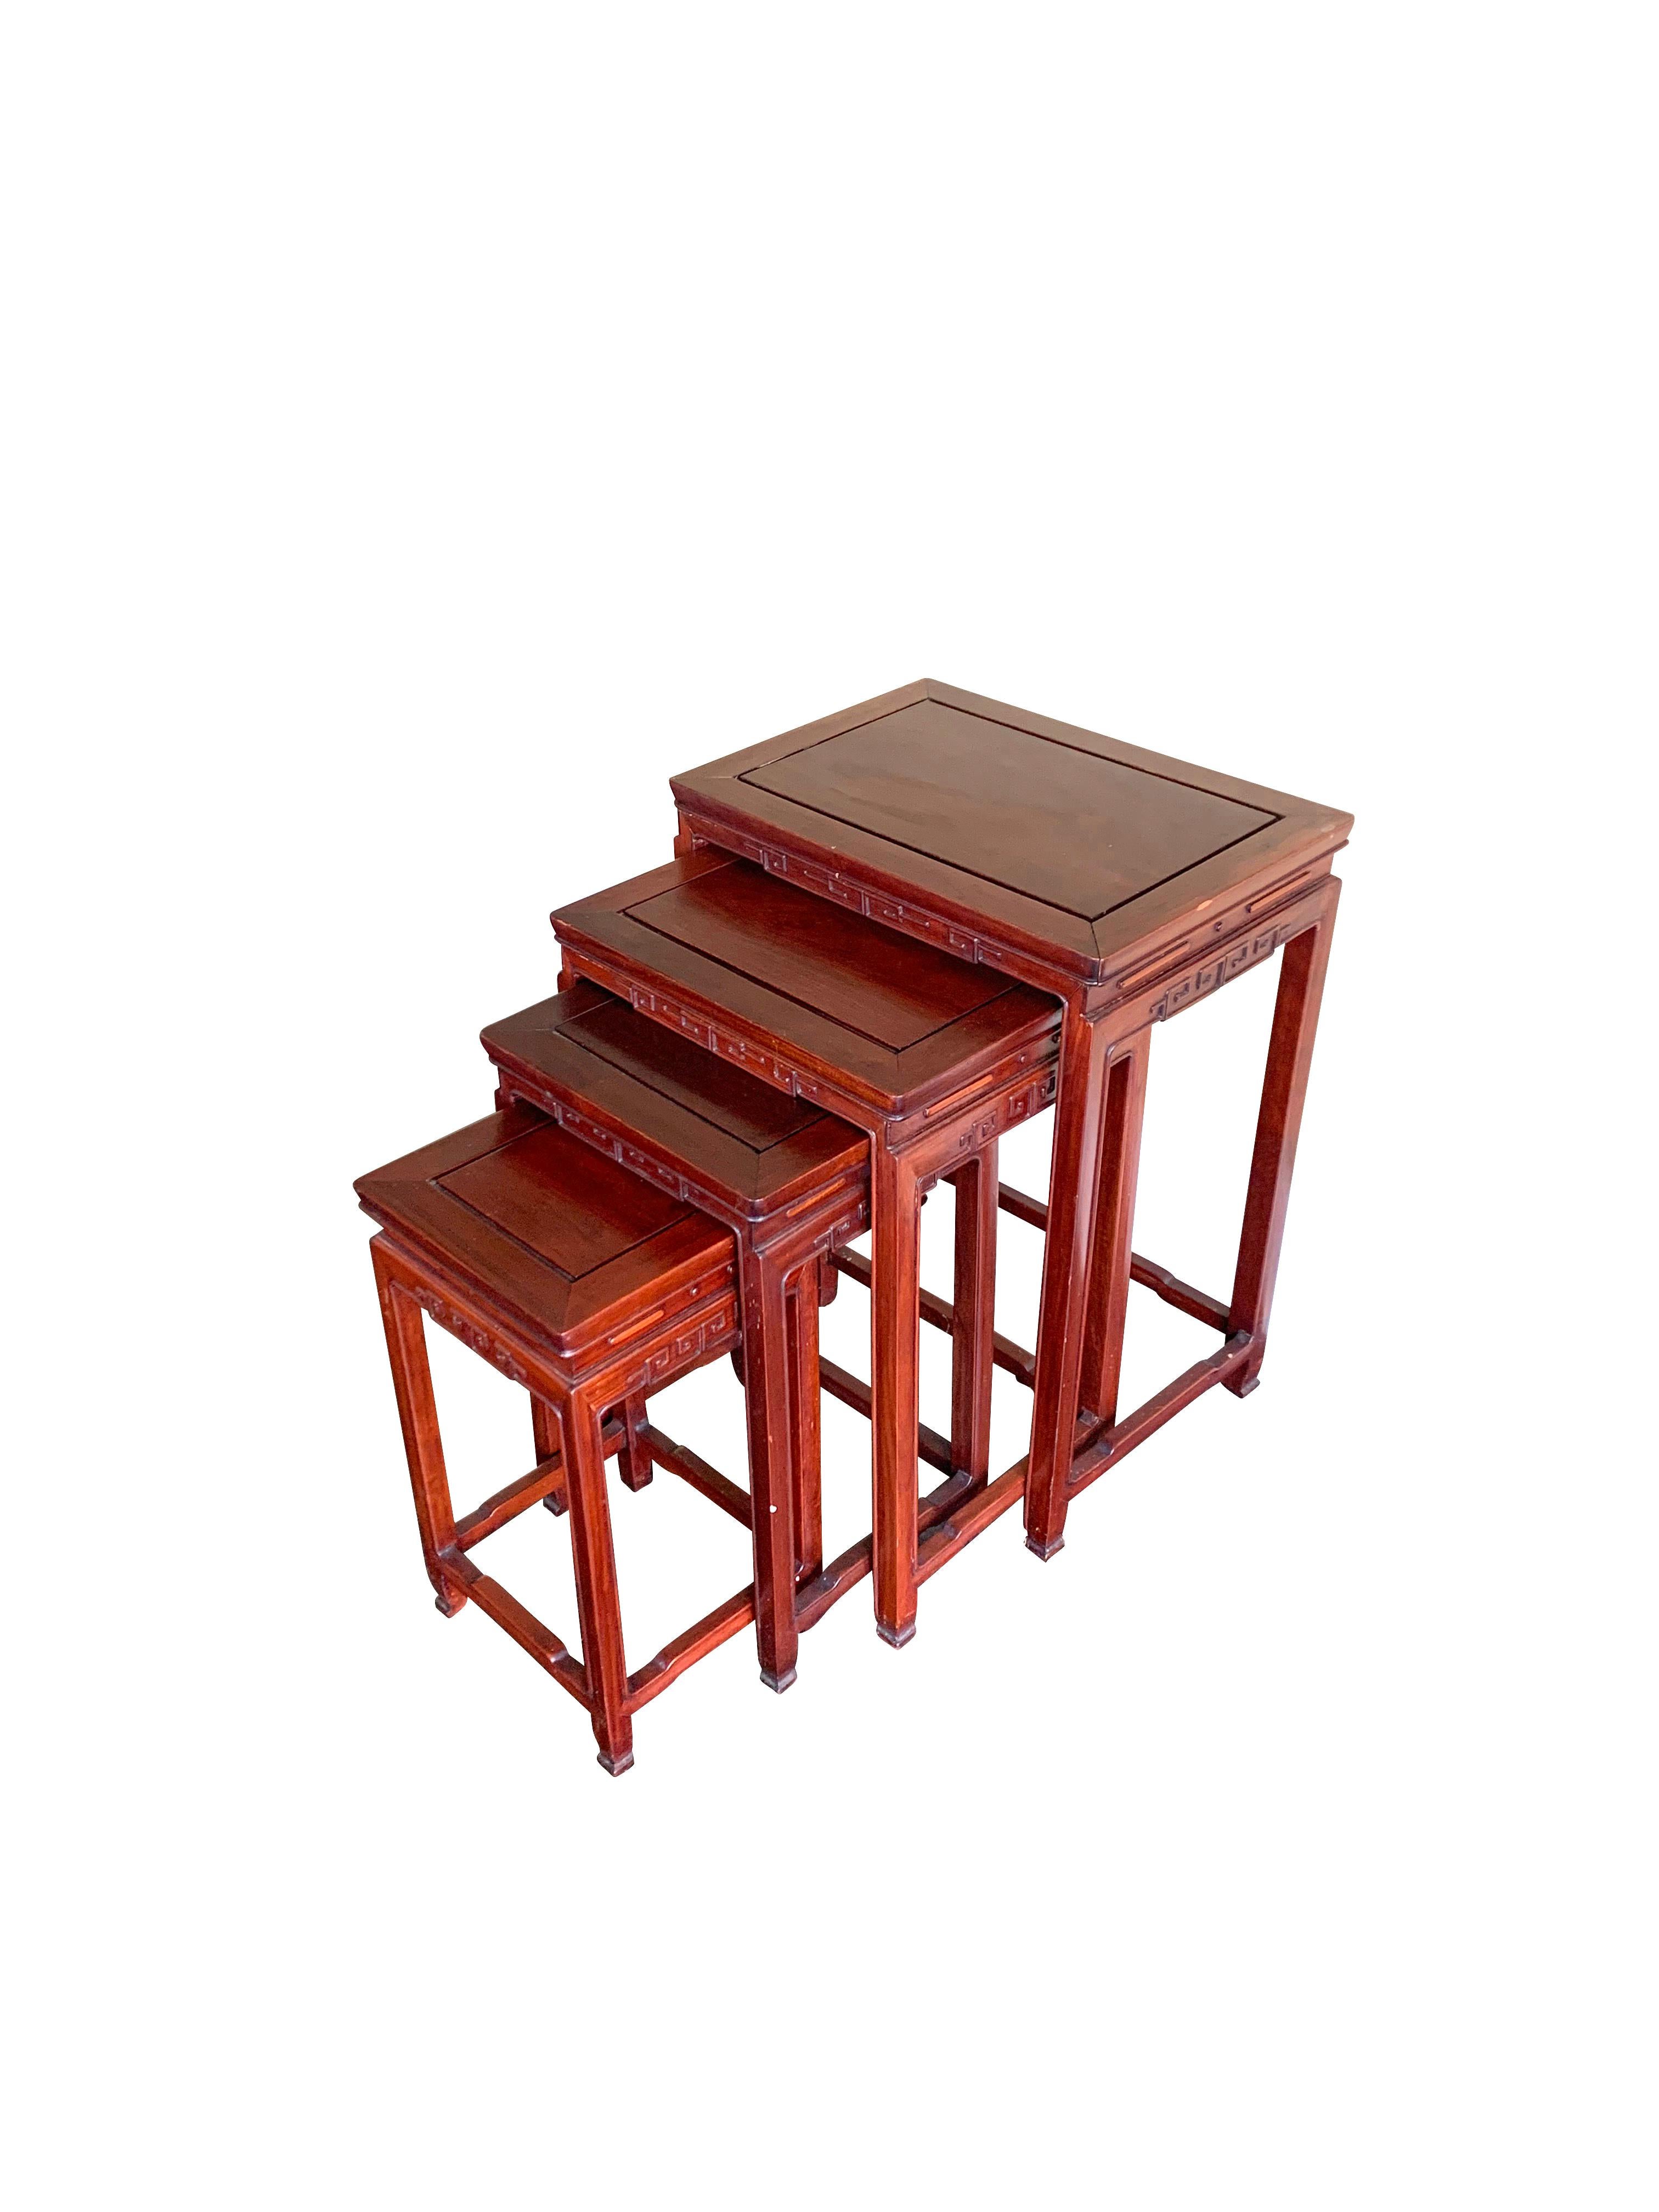 Chinesischer Satz von vier Nisttischen aus Palisanderholz aus der Jahrhundertmitte.
Kürzlich poliert.
Traditionelles dekoratives Motiv um die Tischplatte.
Sehr funktionell.
Die Größen sind 20 x 14 x 26
17 x 13 x 24
14 x 11 x 22
11 x 11 x 20.